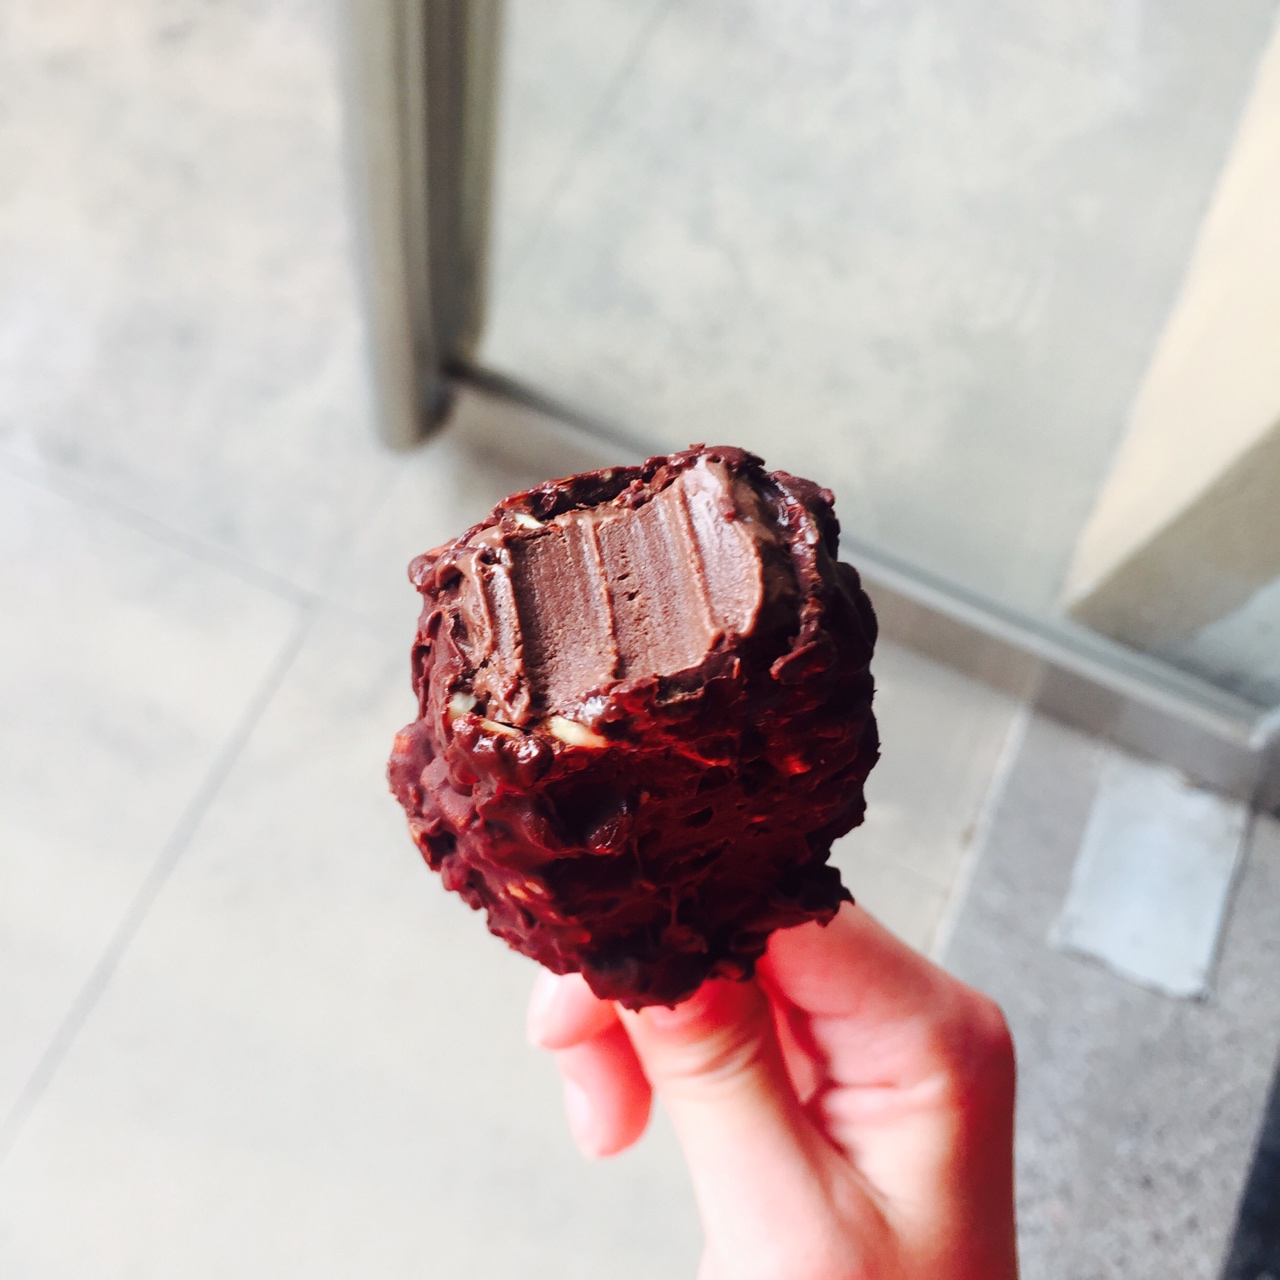 《Tinrry下午茶》教你做不用打发的脆皮巧克力冰淇淋